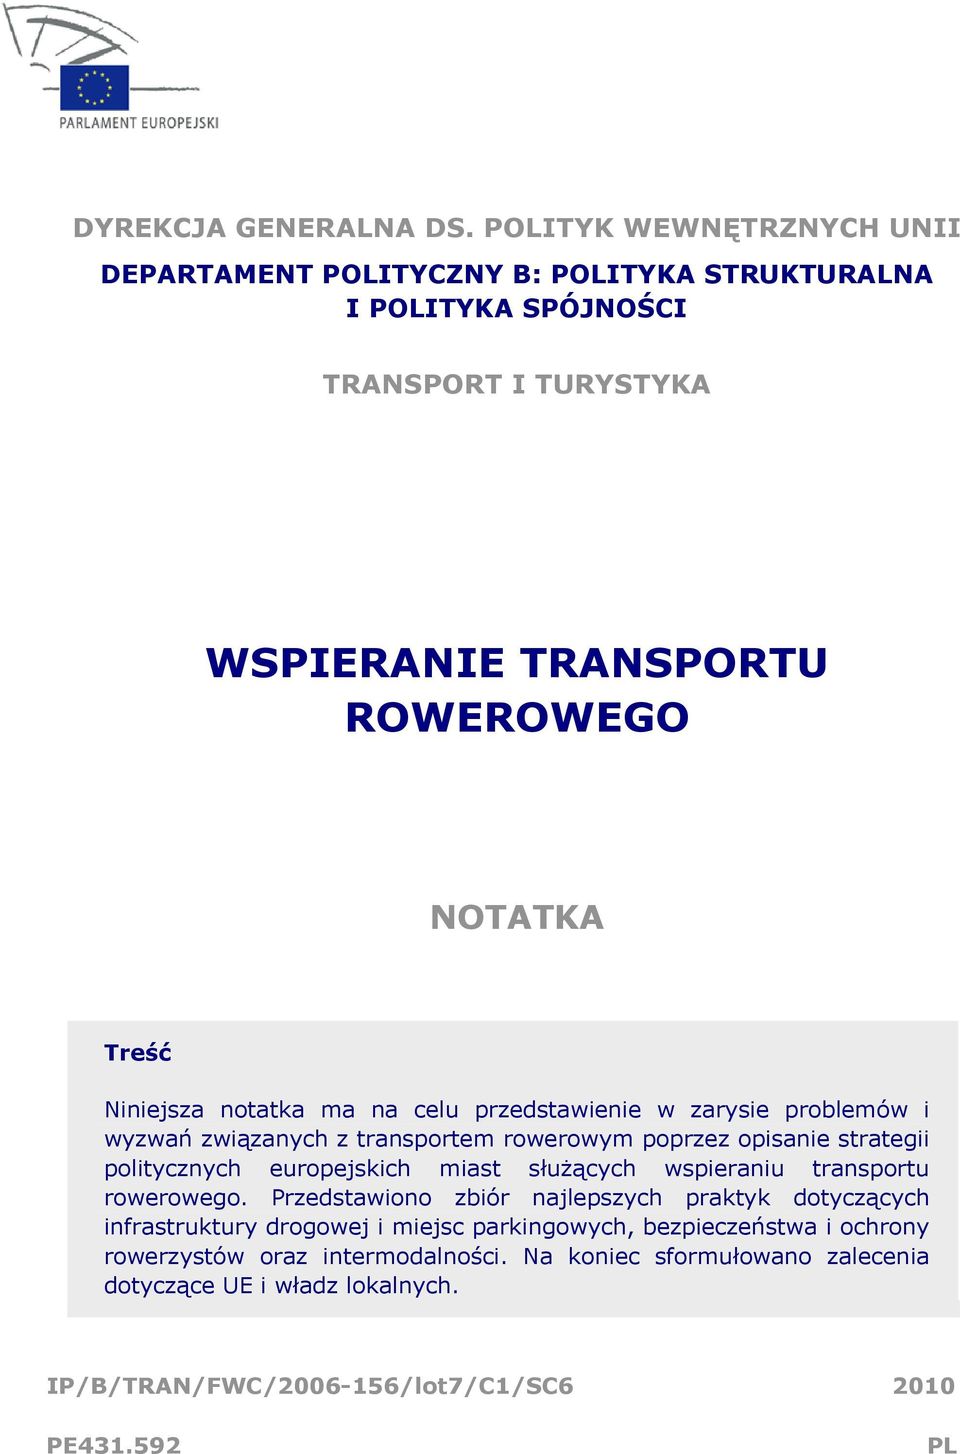 Niniejsza notatka ma na celu przedstawienie w zarysie problemów i wyzwań związanych z transportem rowerowym poprzez opisanie strategii politycznych europejskich miast